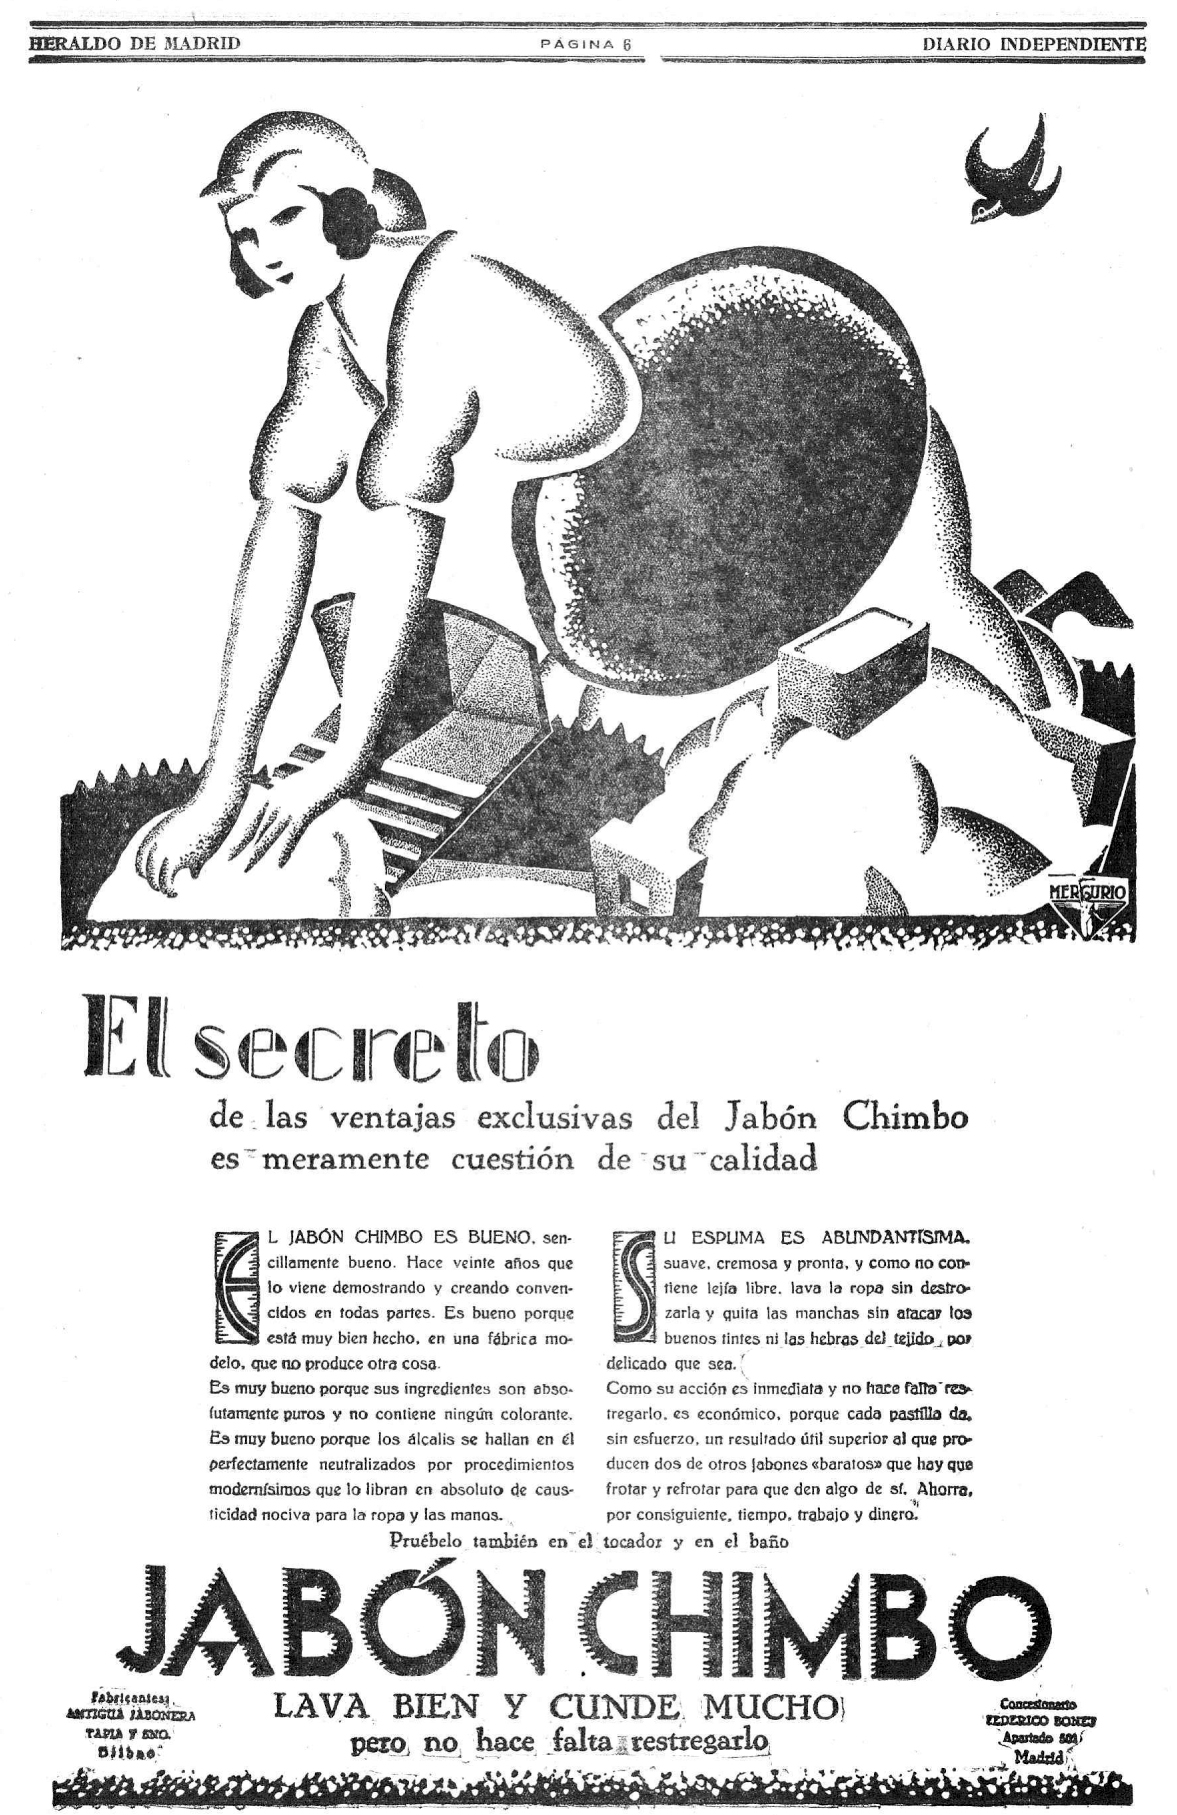 ANUNCIO DE JAB�N CHIMBO EN EL HERALDO DE MADRID. 1